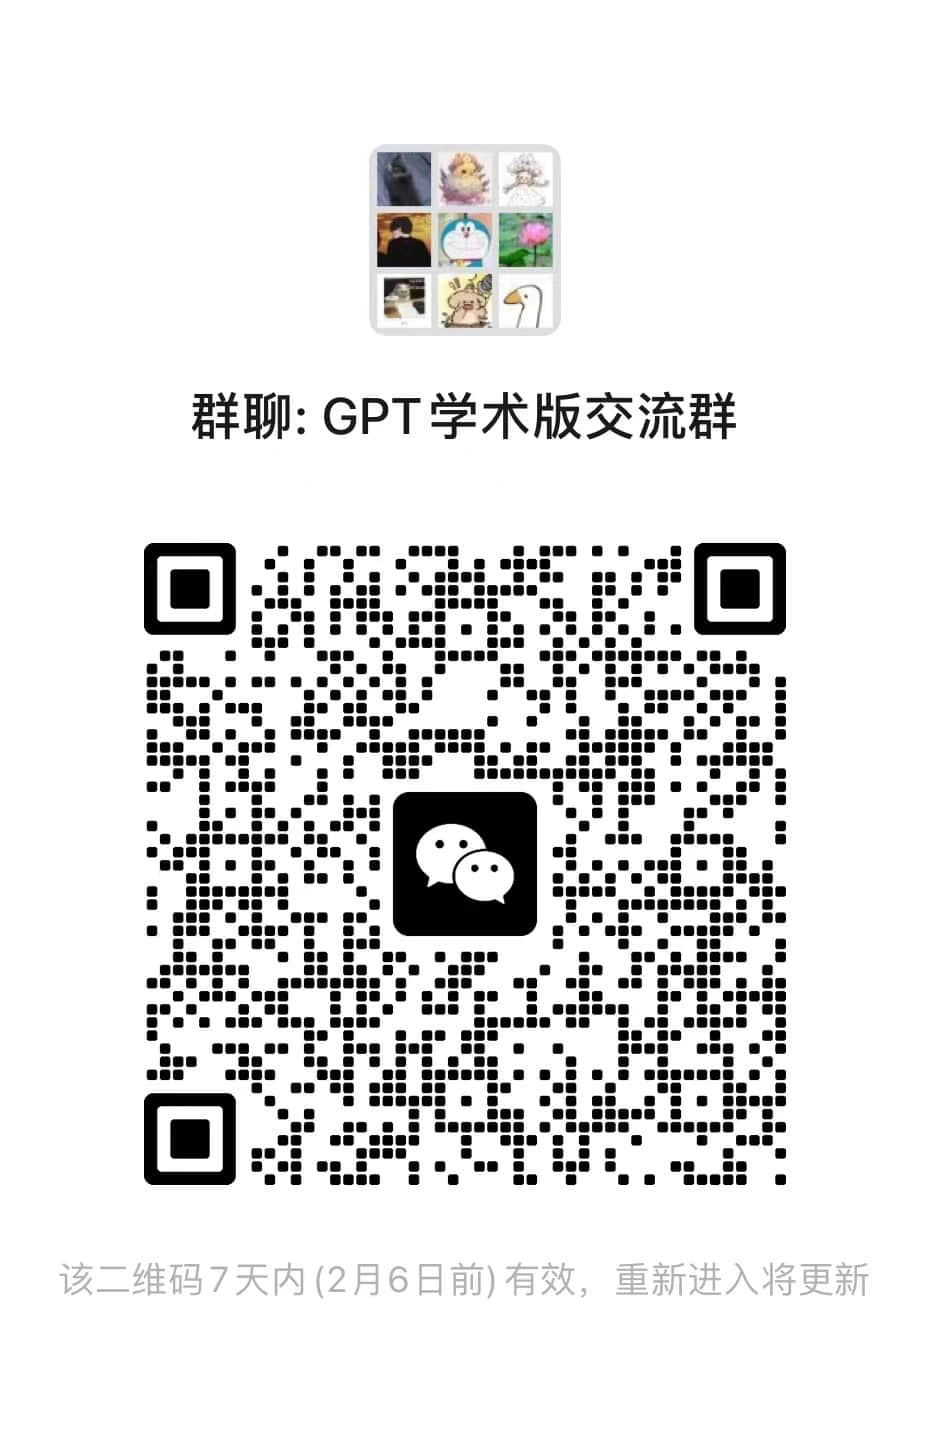 LYZGPT学术版交流群|学术版GPT论坛|ChatGPT|LYZ-ling云智